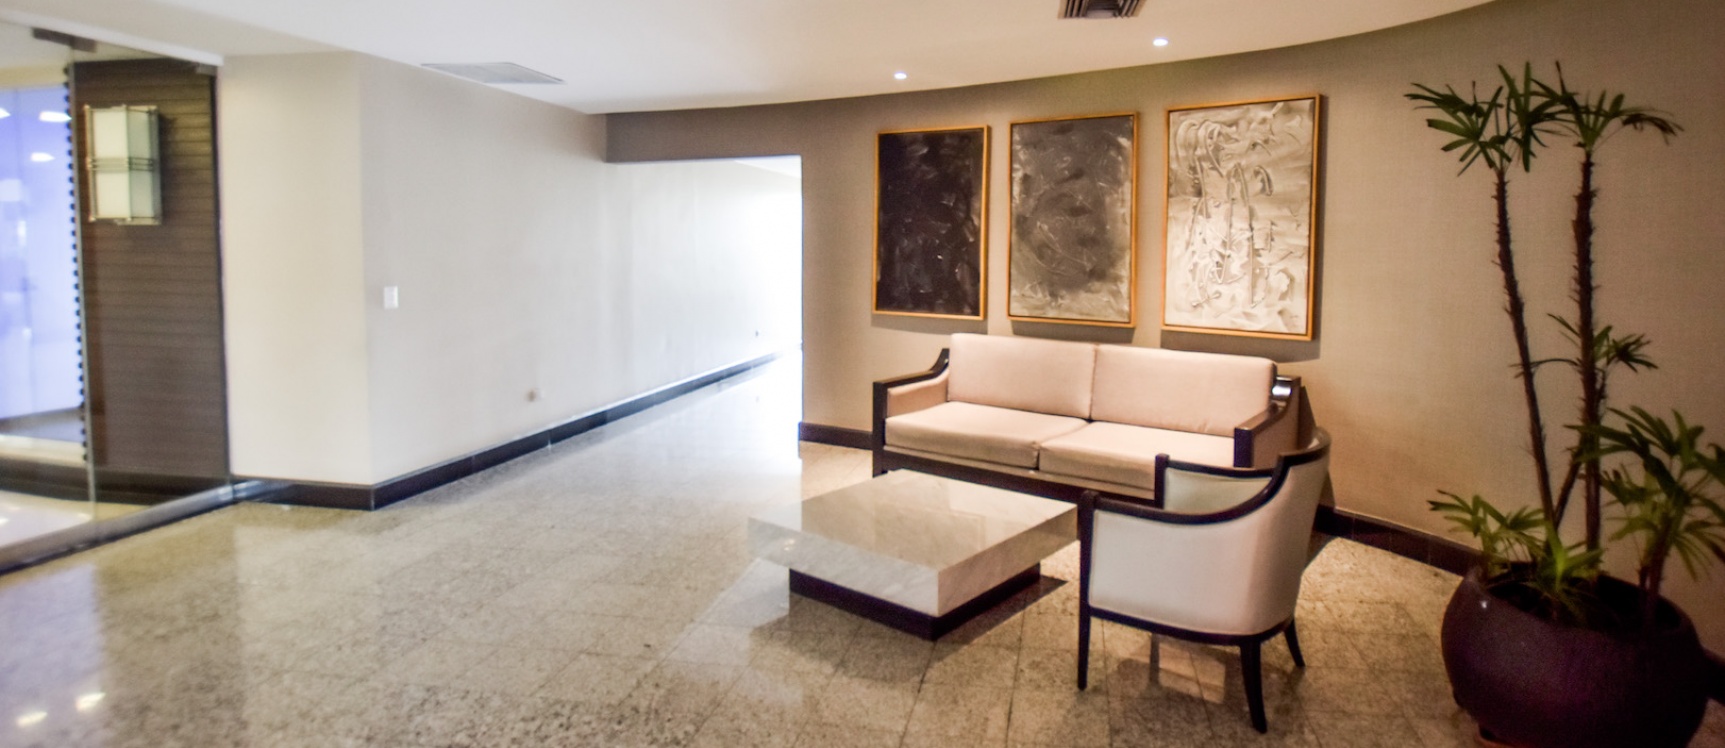 GeoBienes - Alquiler de suite amoblada en Torre Colón I, Guayaquil - Ecuador - Plusvalia Guayaquil Casas de venta y alquiler Inmobiliaria Ecuador